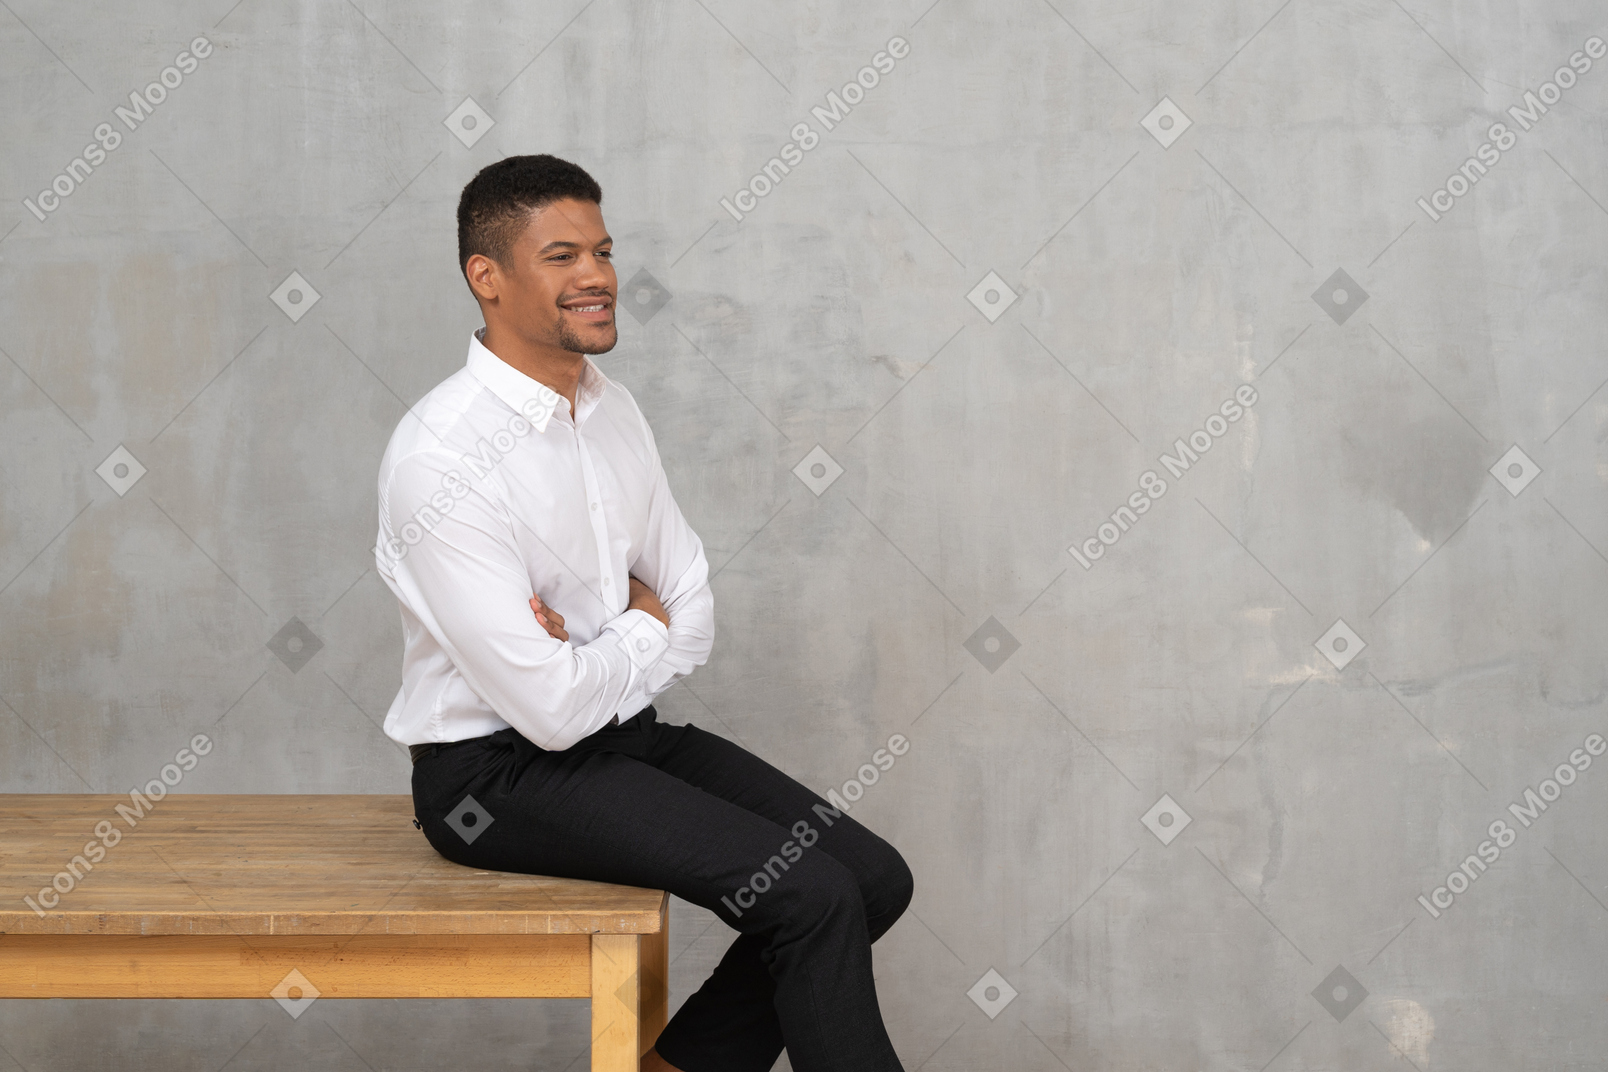 Hombre sonriente con ropa de oficina sentado en una mesa con los brazos cruzados